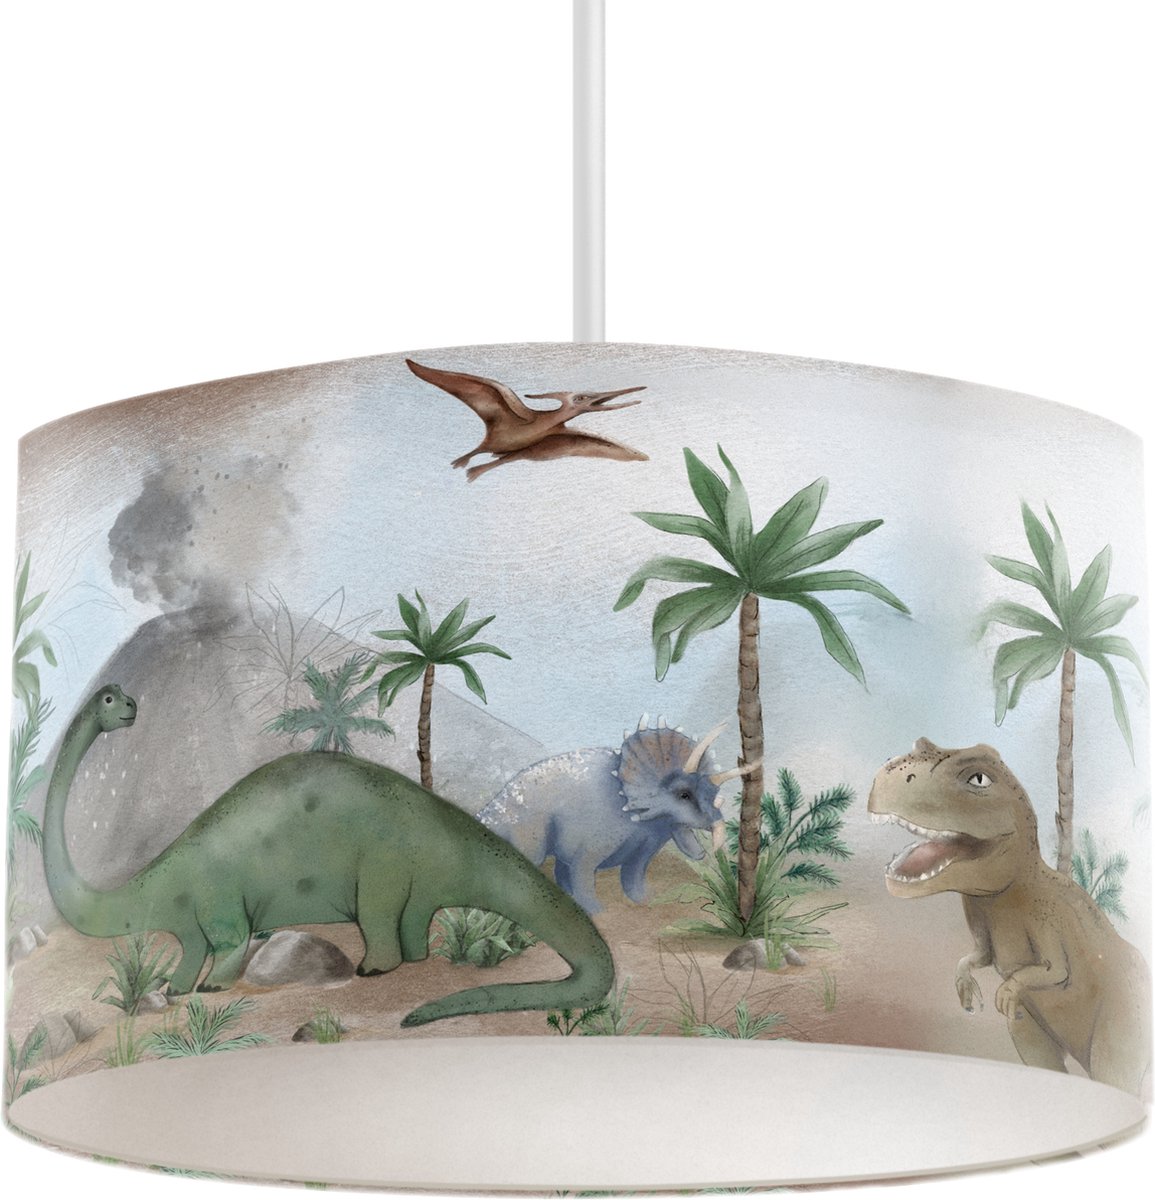 LM Baby Art | Hanglamp dinosaursus | Dinosaurussen hanglamp | Kinderkamerhanglamp | Dino lamp voor de kinderkamer | Kinderverlichting | kinderkamer hanglamp | Dinosaurus thema